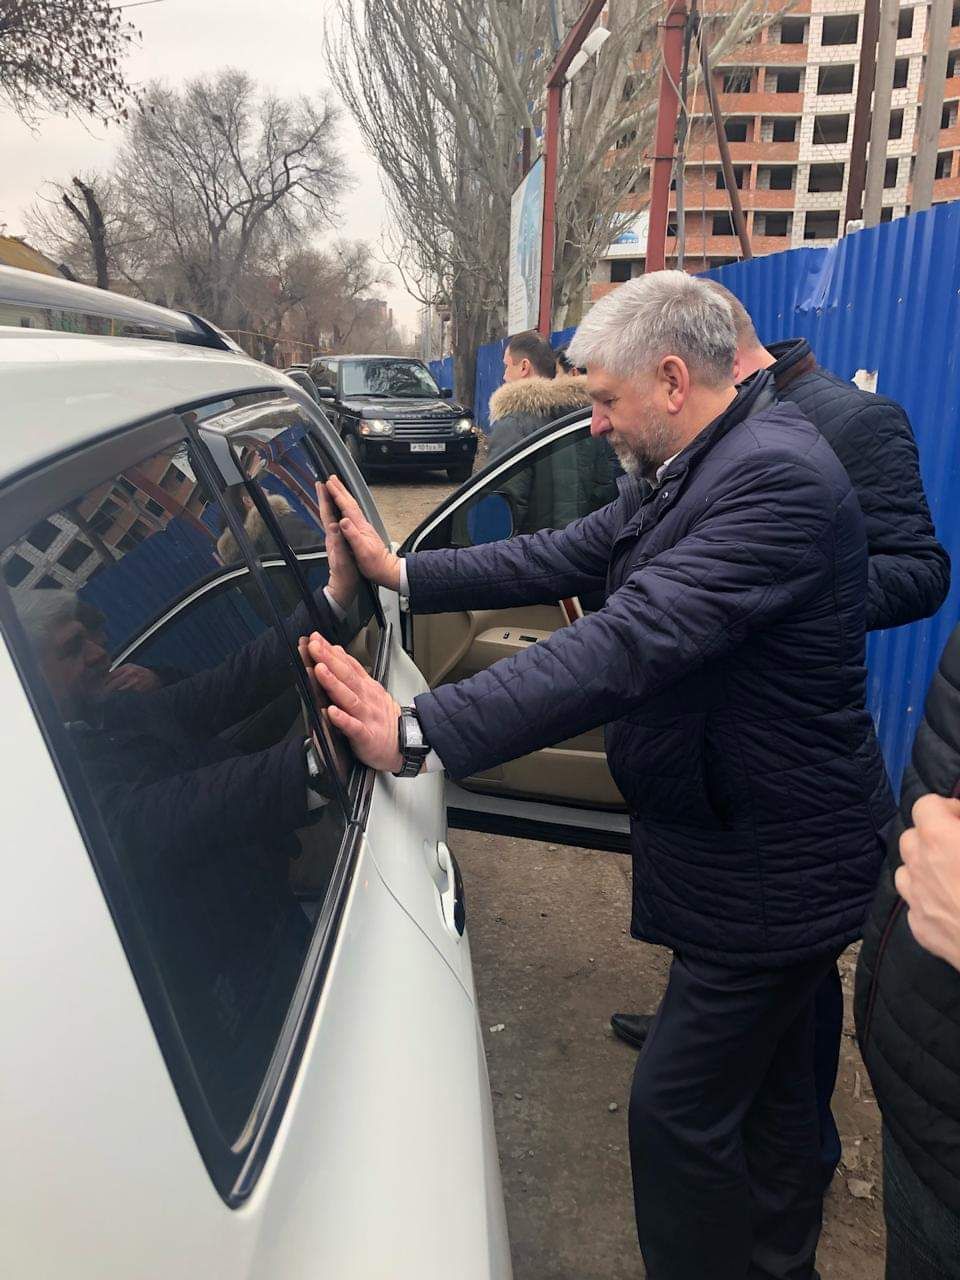 2019 01 30 20.51.03 Опубликованы фотографии ареста мэра Камызяка и главы района